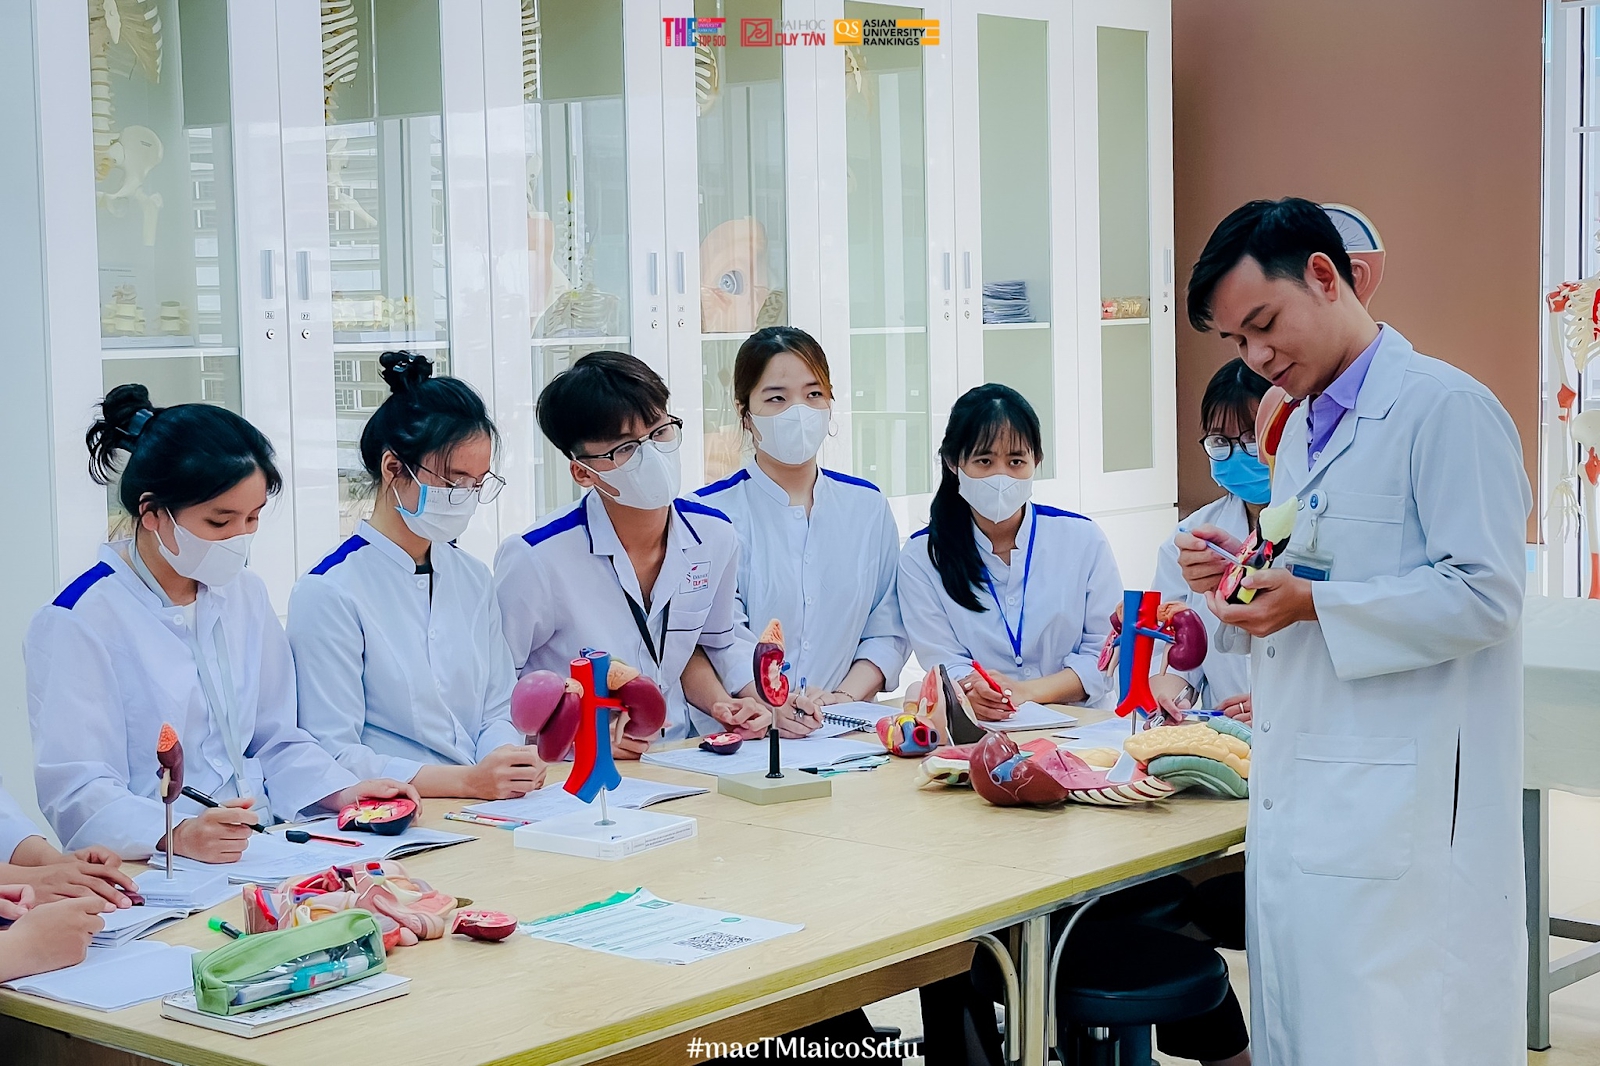 Đại học có thứ hạng cao nhất Việt Nam trong BXH quốc tế uy tín nhưng đầu vào cực “dễ thở” chỉ từ 14 điểm, tỷ lệ sinh viên có việc làm vượt ngưỡng 85% - Ảnh 3.